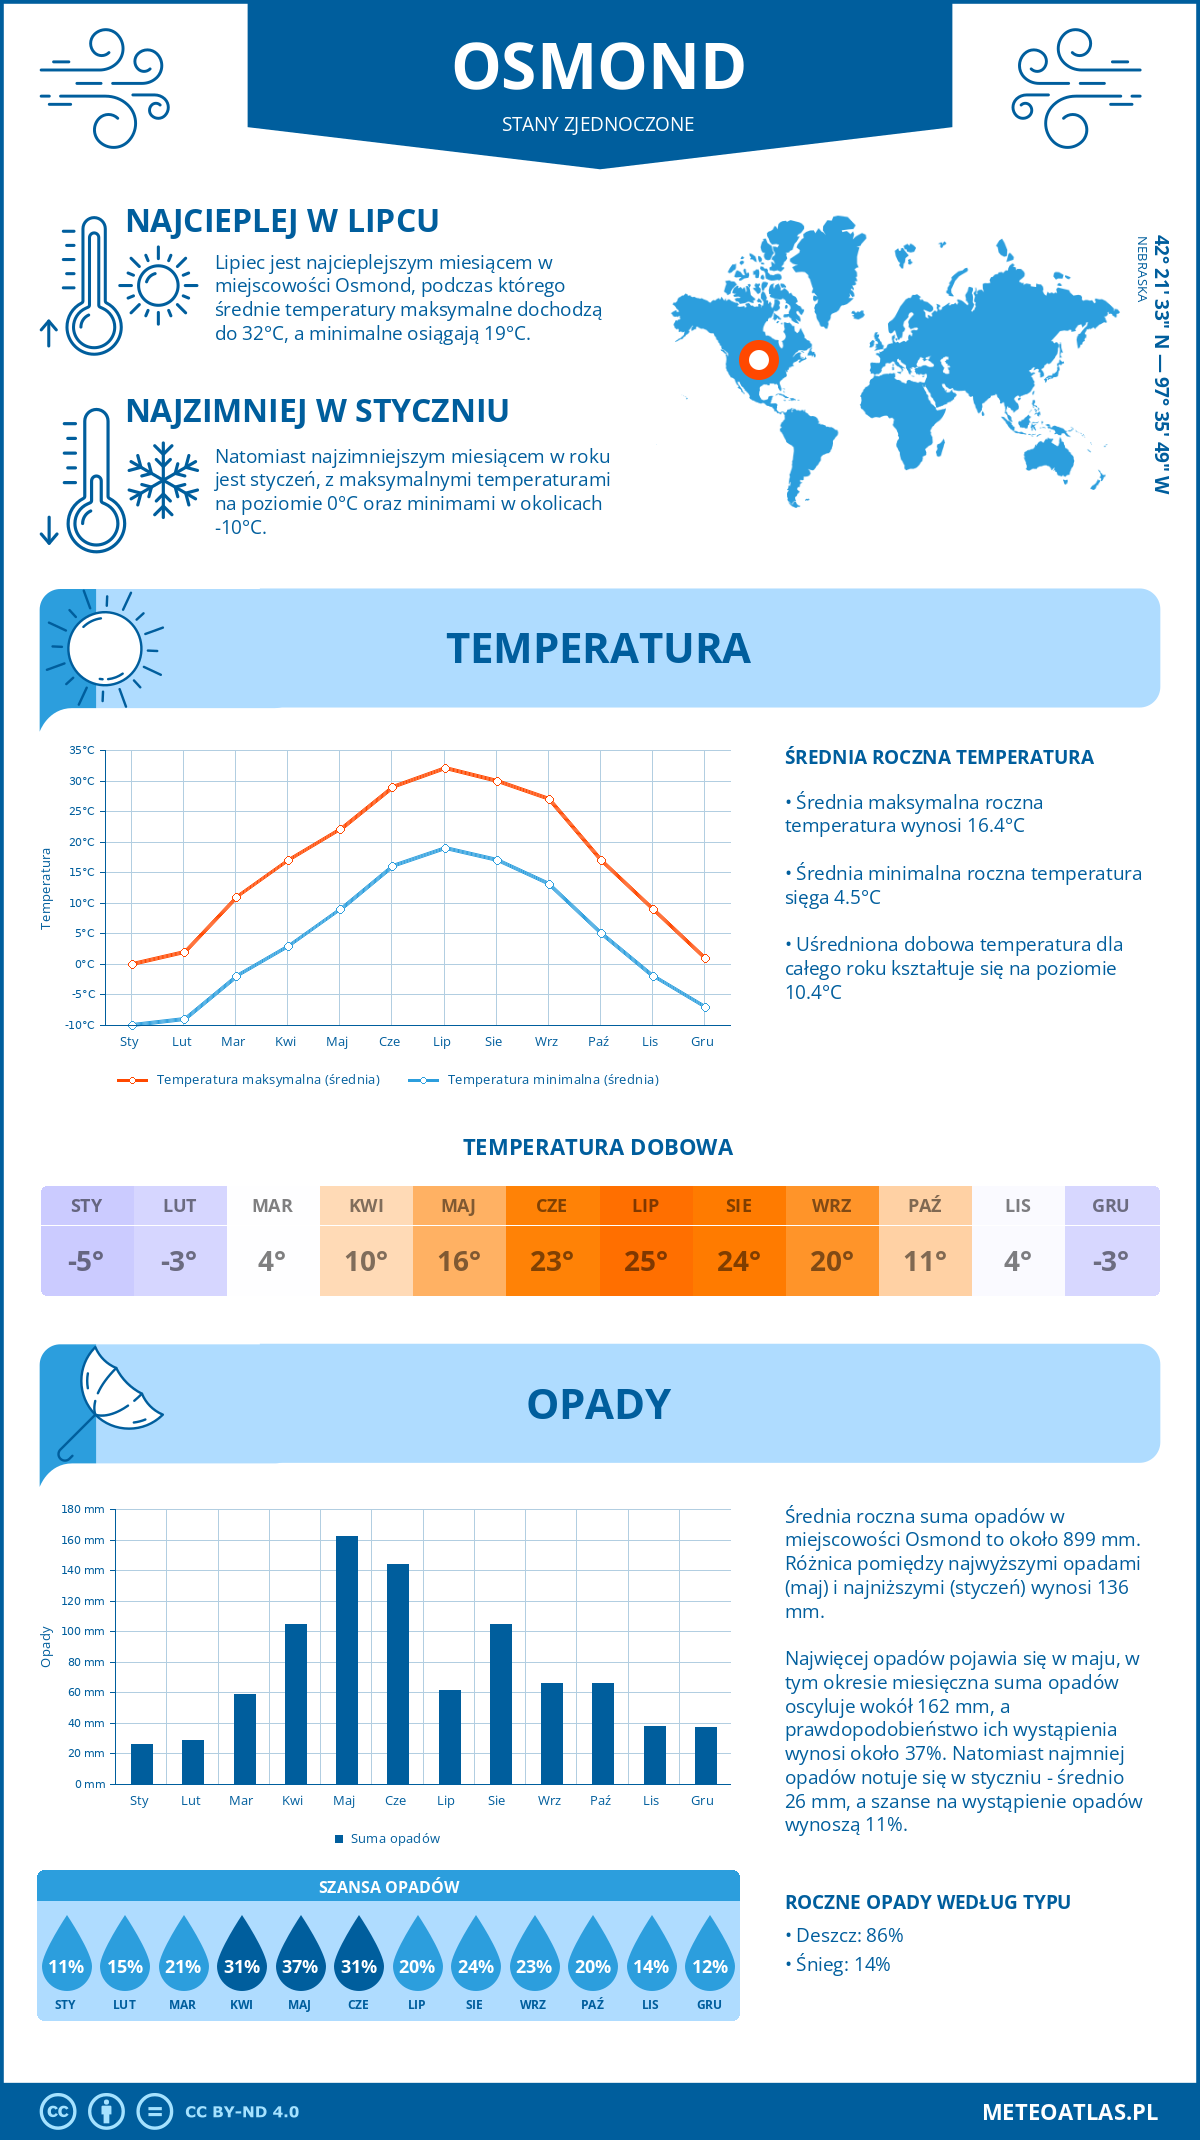 Pogoda Osmond (Stany Zjednoczone). Temperatura oraz opady.